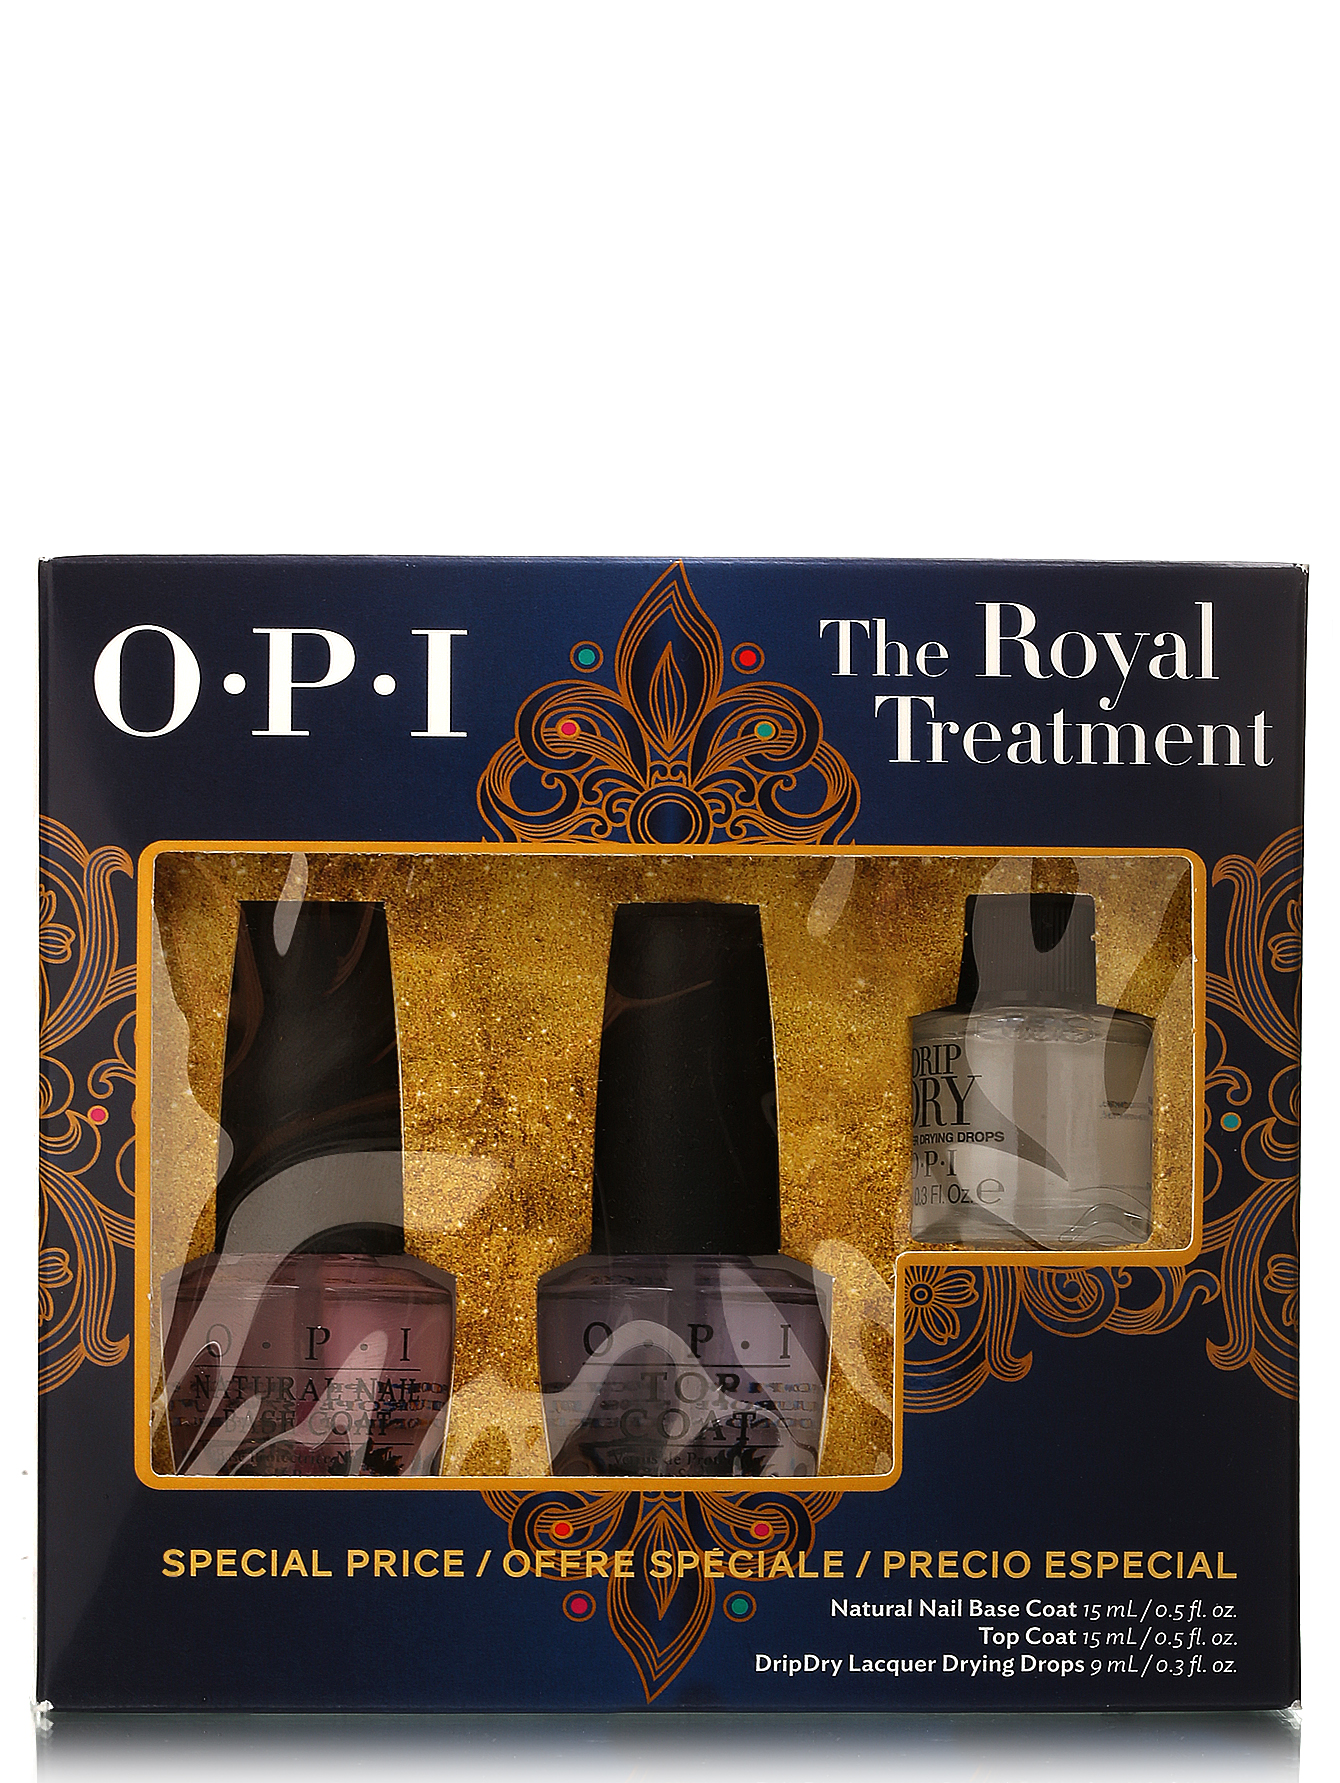  Набор (база, верхнее покрытие, капли для сушки) The Royal Treatment - Classic nail, 15ml/9ml - Общий вид